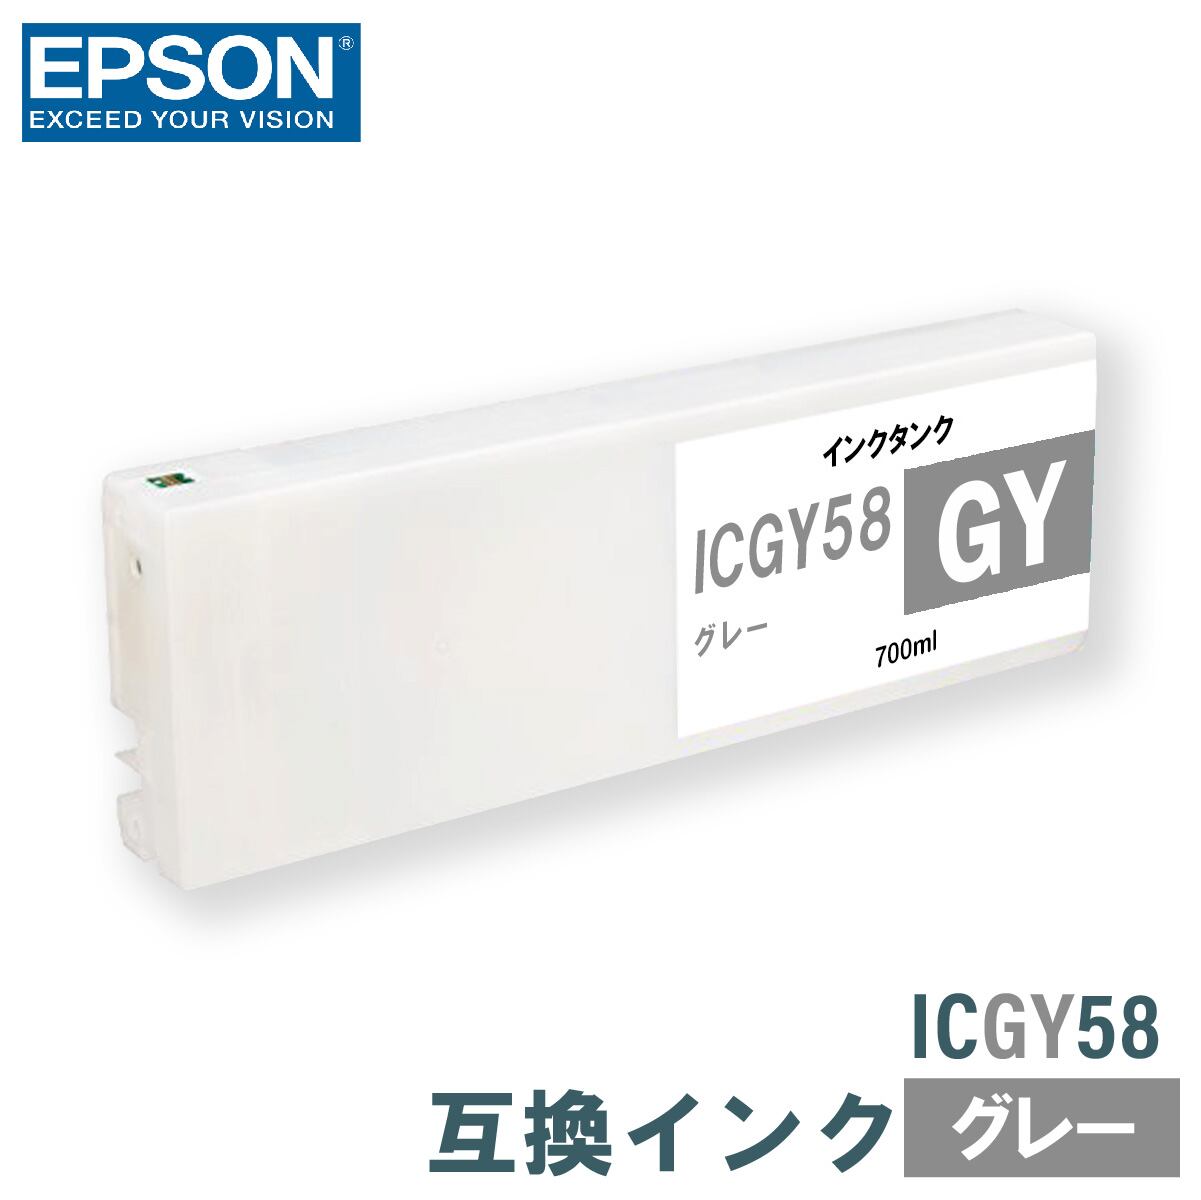 エプソン 互換インク EPSON ICGY58 グレー 700ml 互換インク、ロール紙販売のPRINKS(プリンクス)